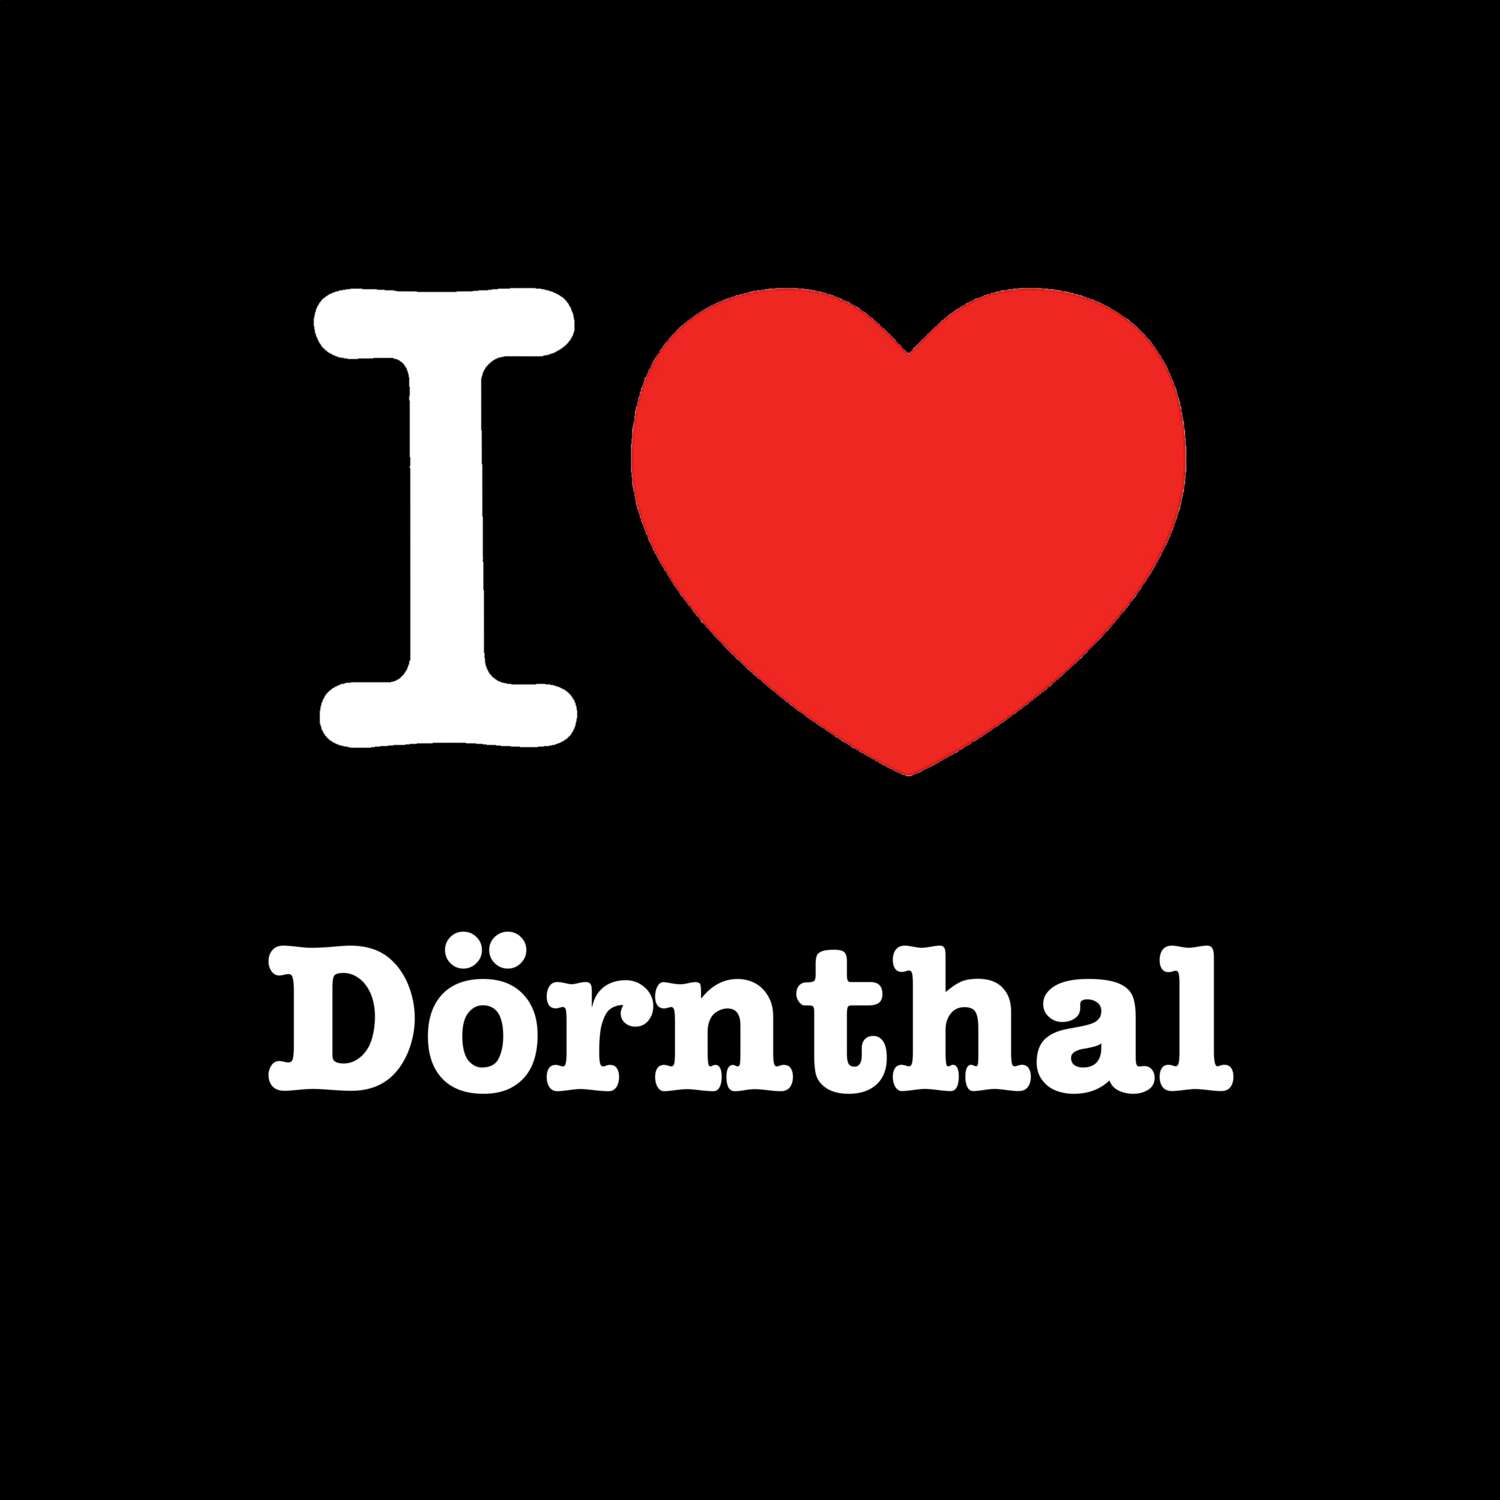 Dörnthal T-Shirt »I love«